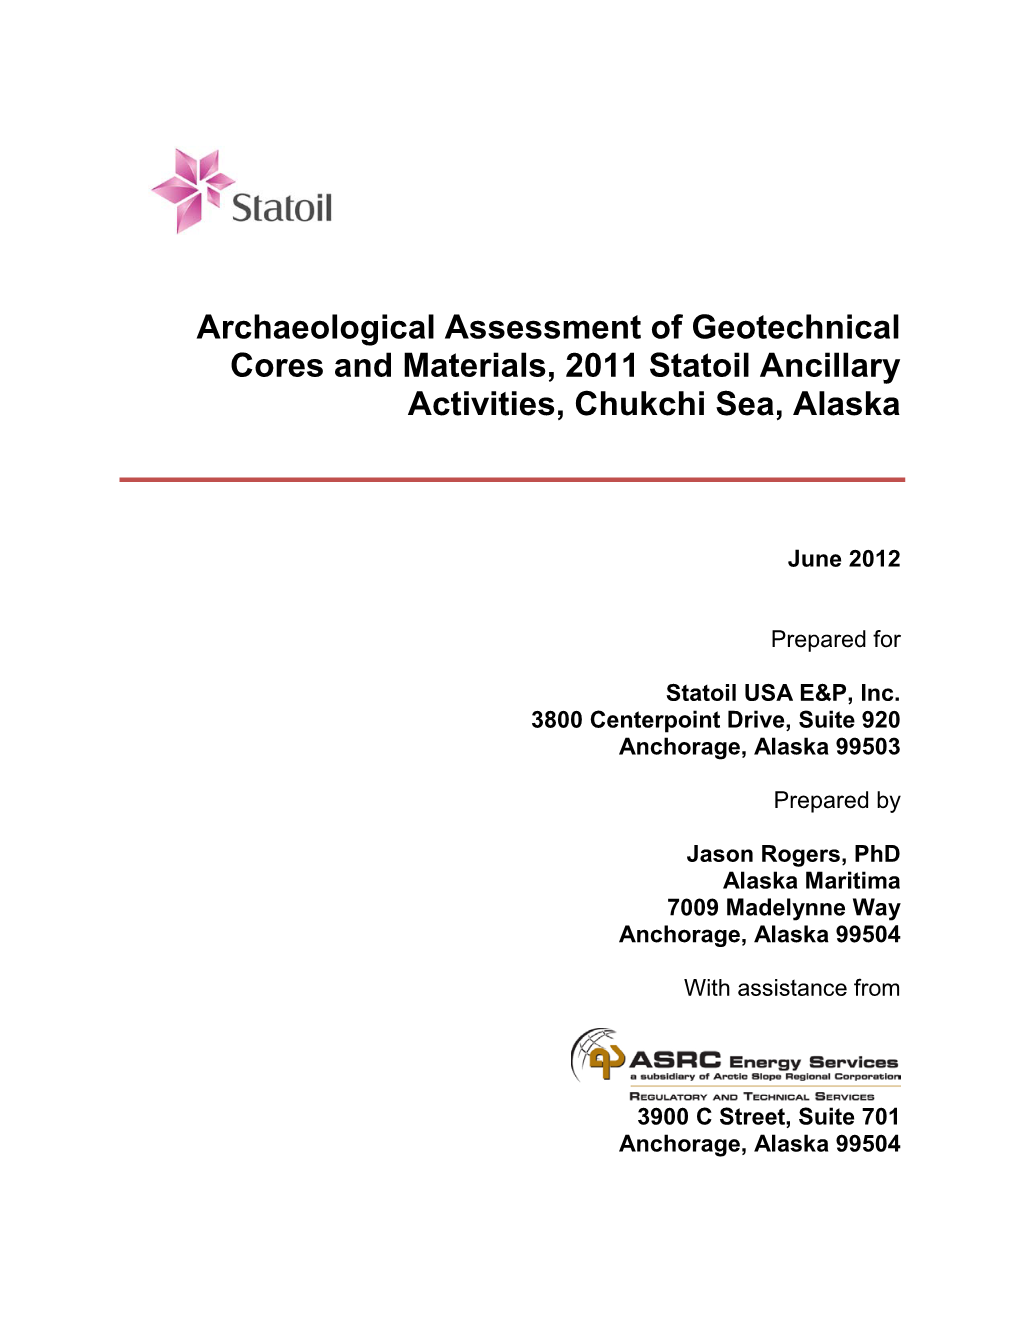 Statoil's Archaeological Assessment